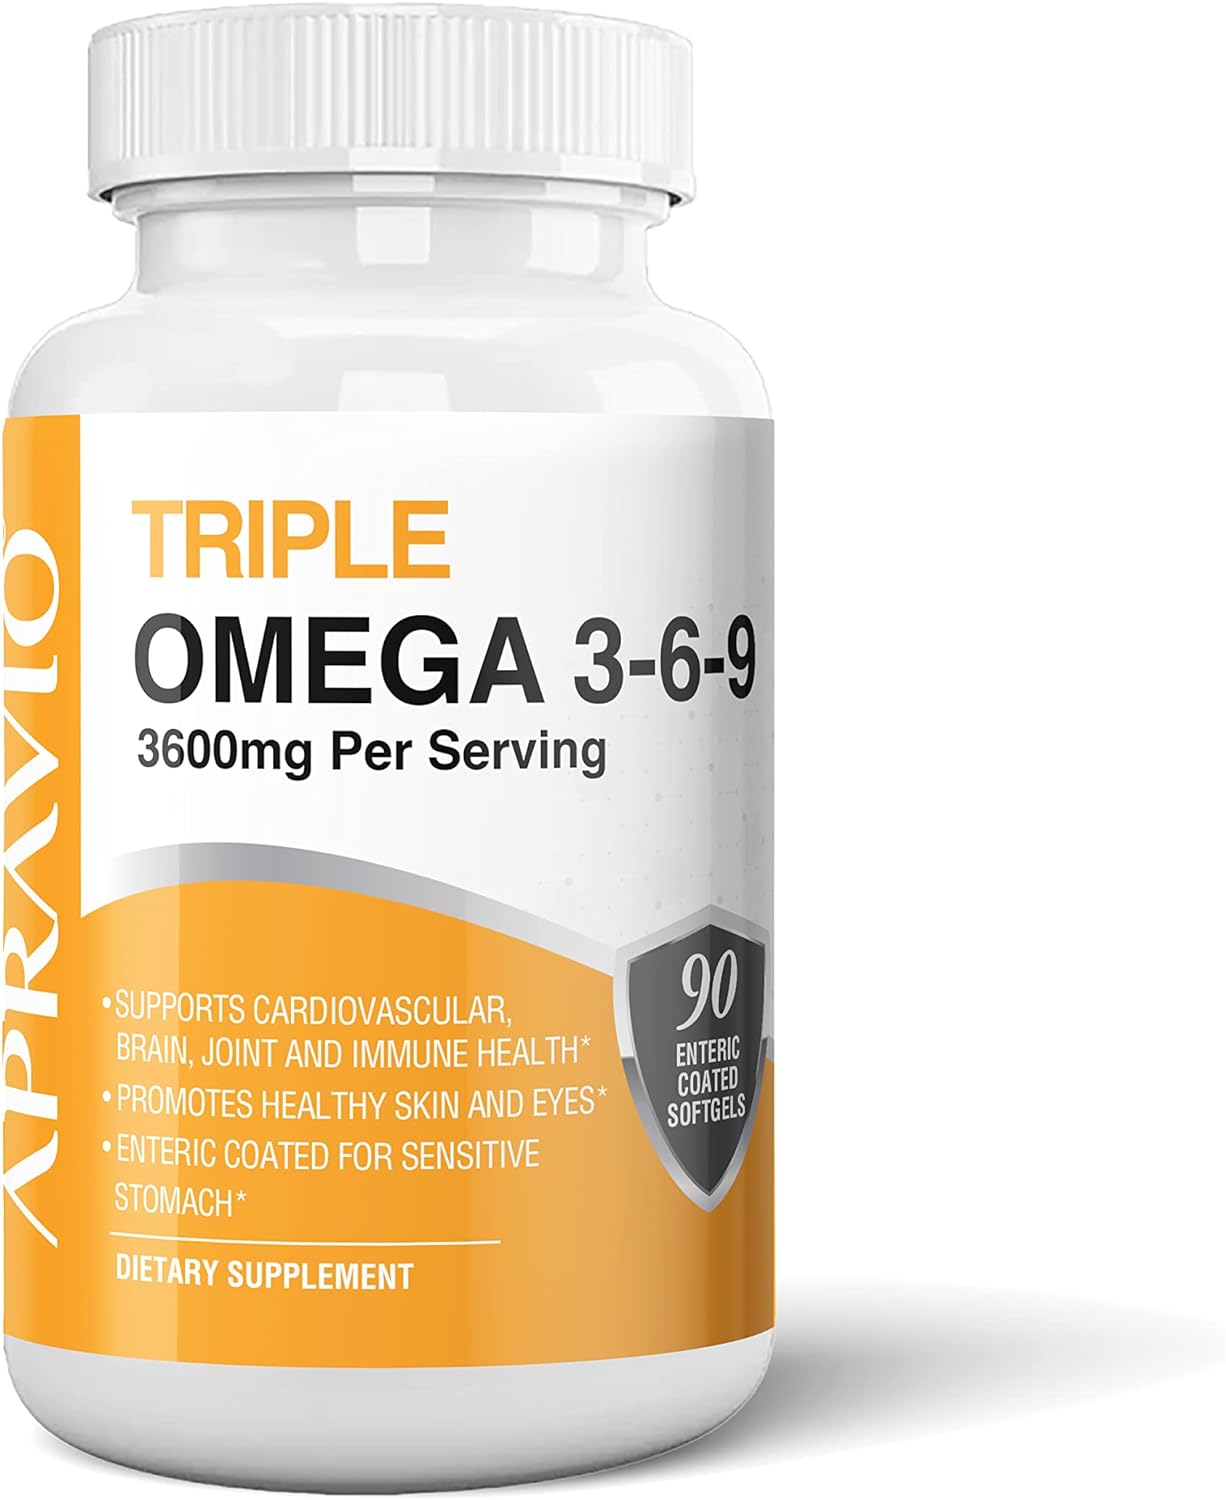 APRAVIO Triple Omega 3-6-9 Fish Oil, Omega Supplement for Adults, Essential Fatty Acids, Non-GMO, 90